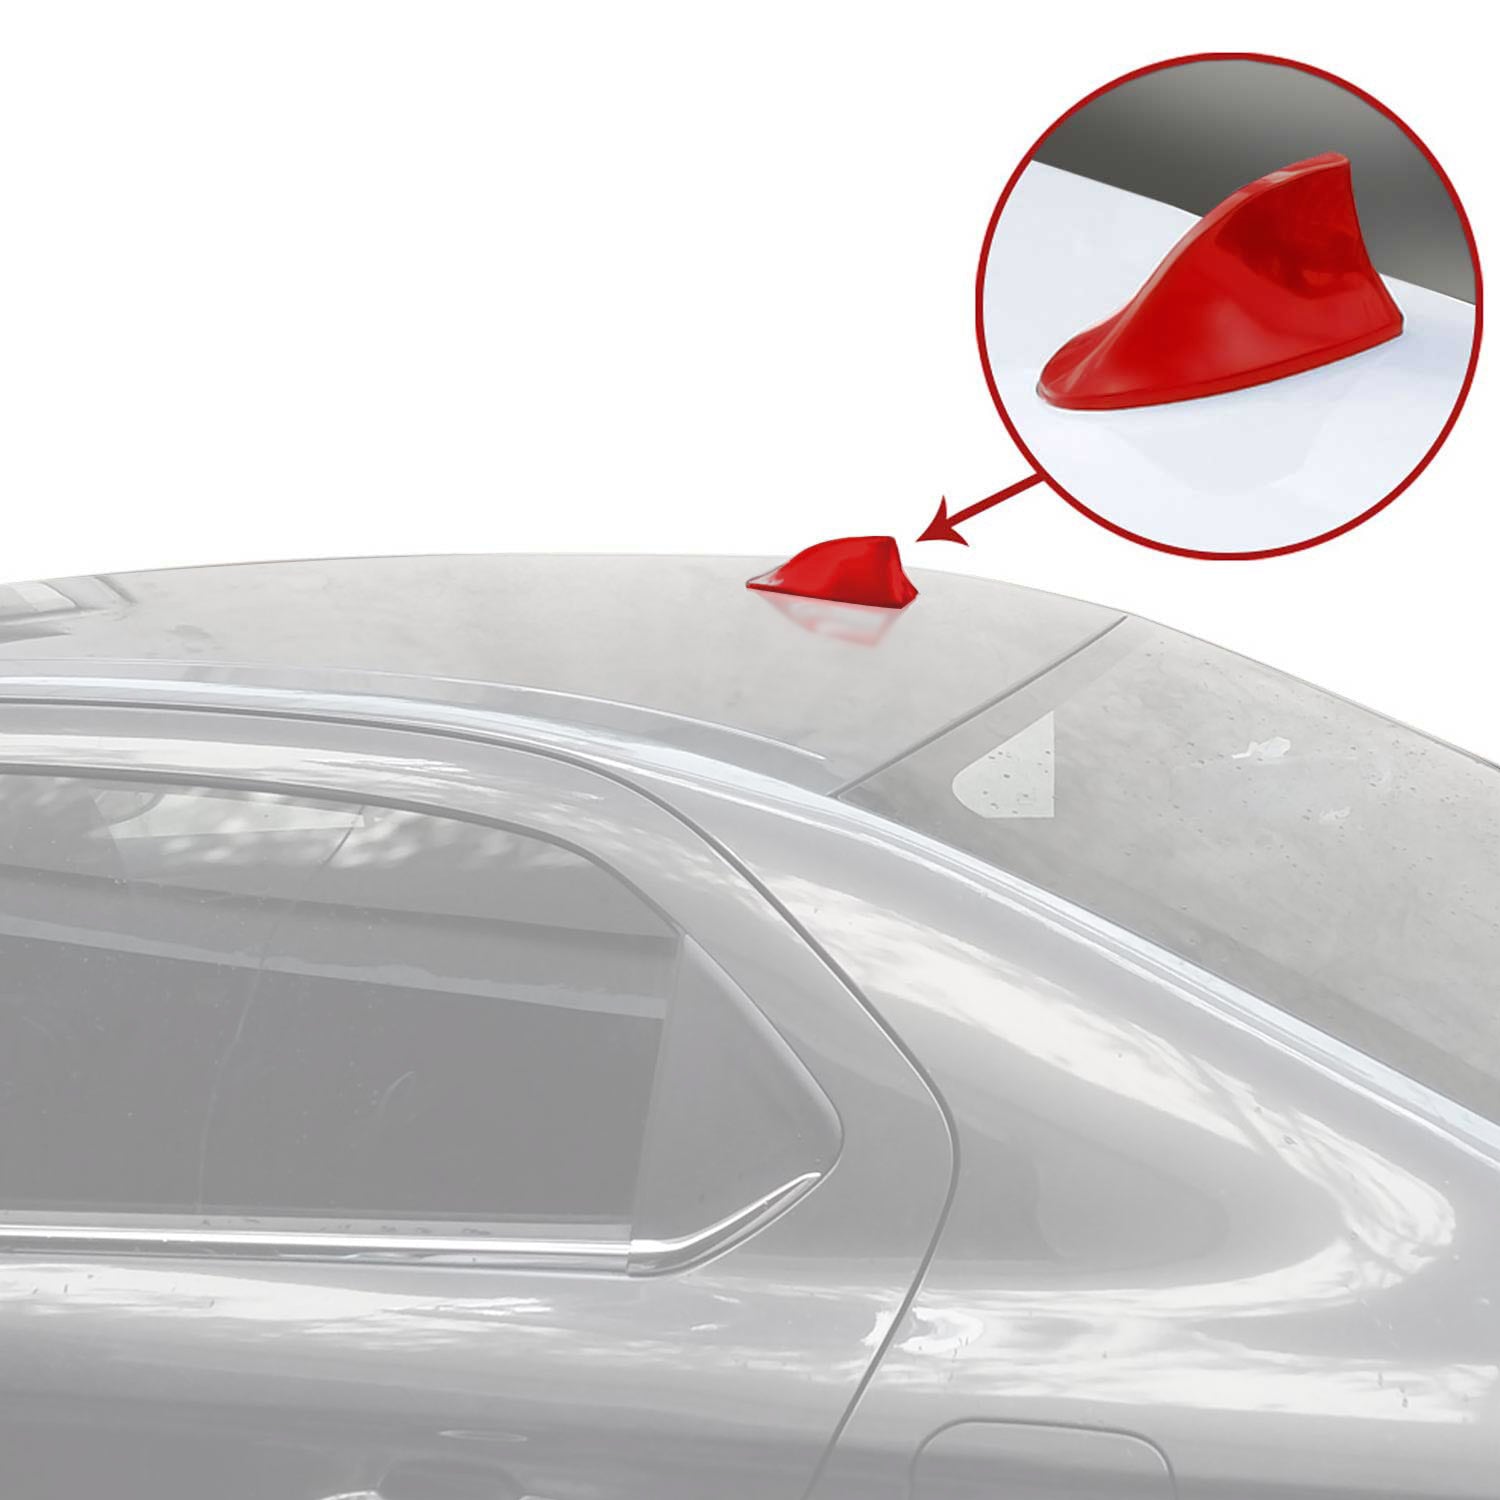 Preiswert 11.12 Neuer stil Dachantenne Autoantenne AM/FM Autoradio Shark  Antenne für VW Polo Rot der Sonderpreis.